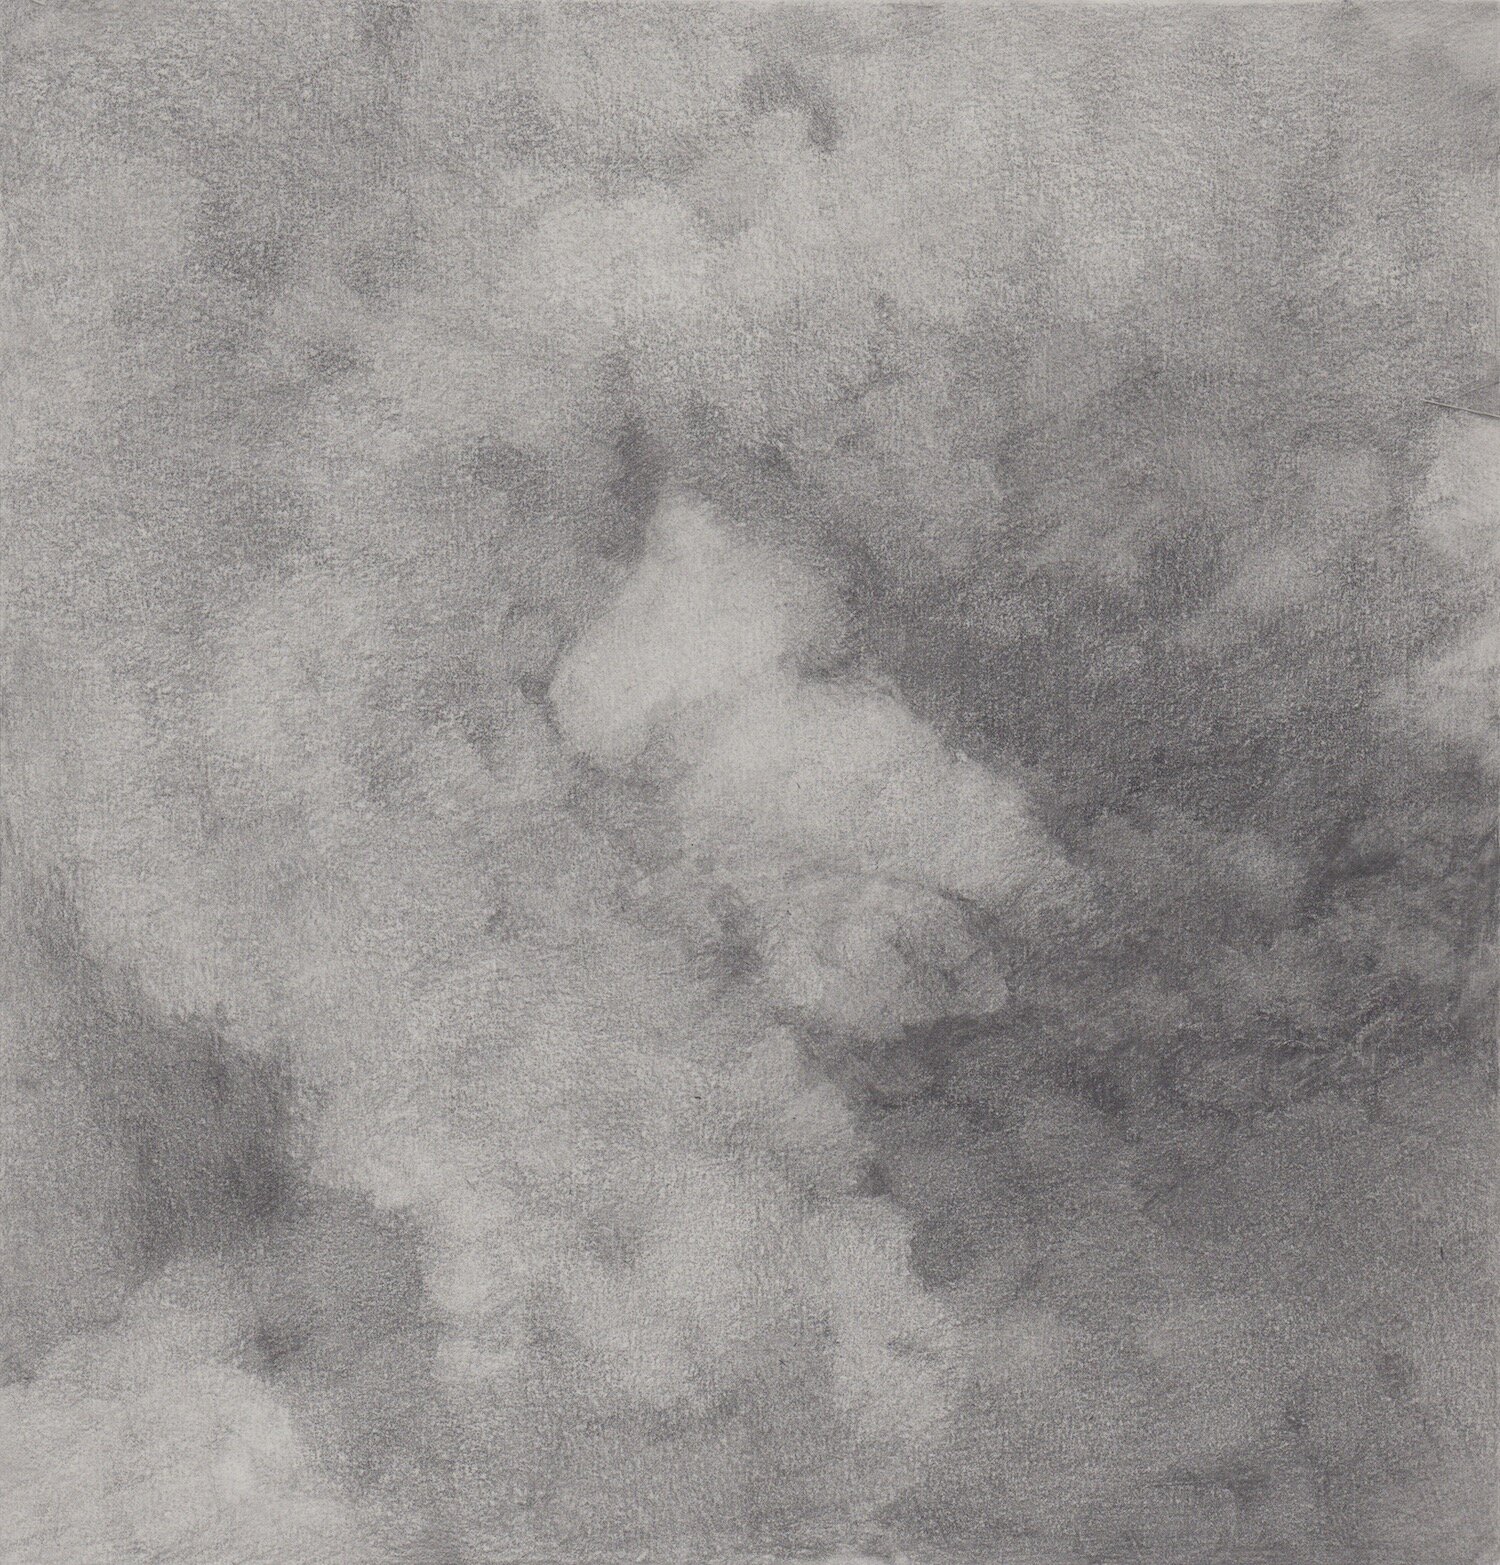 Steam Cloud